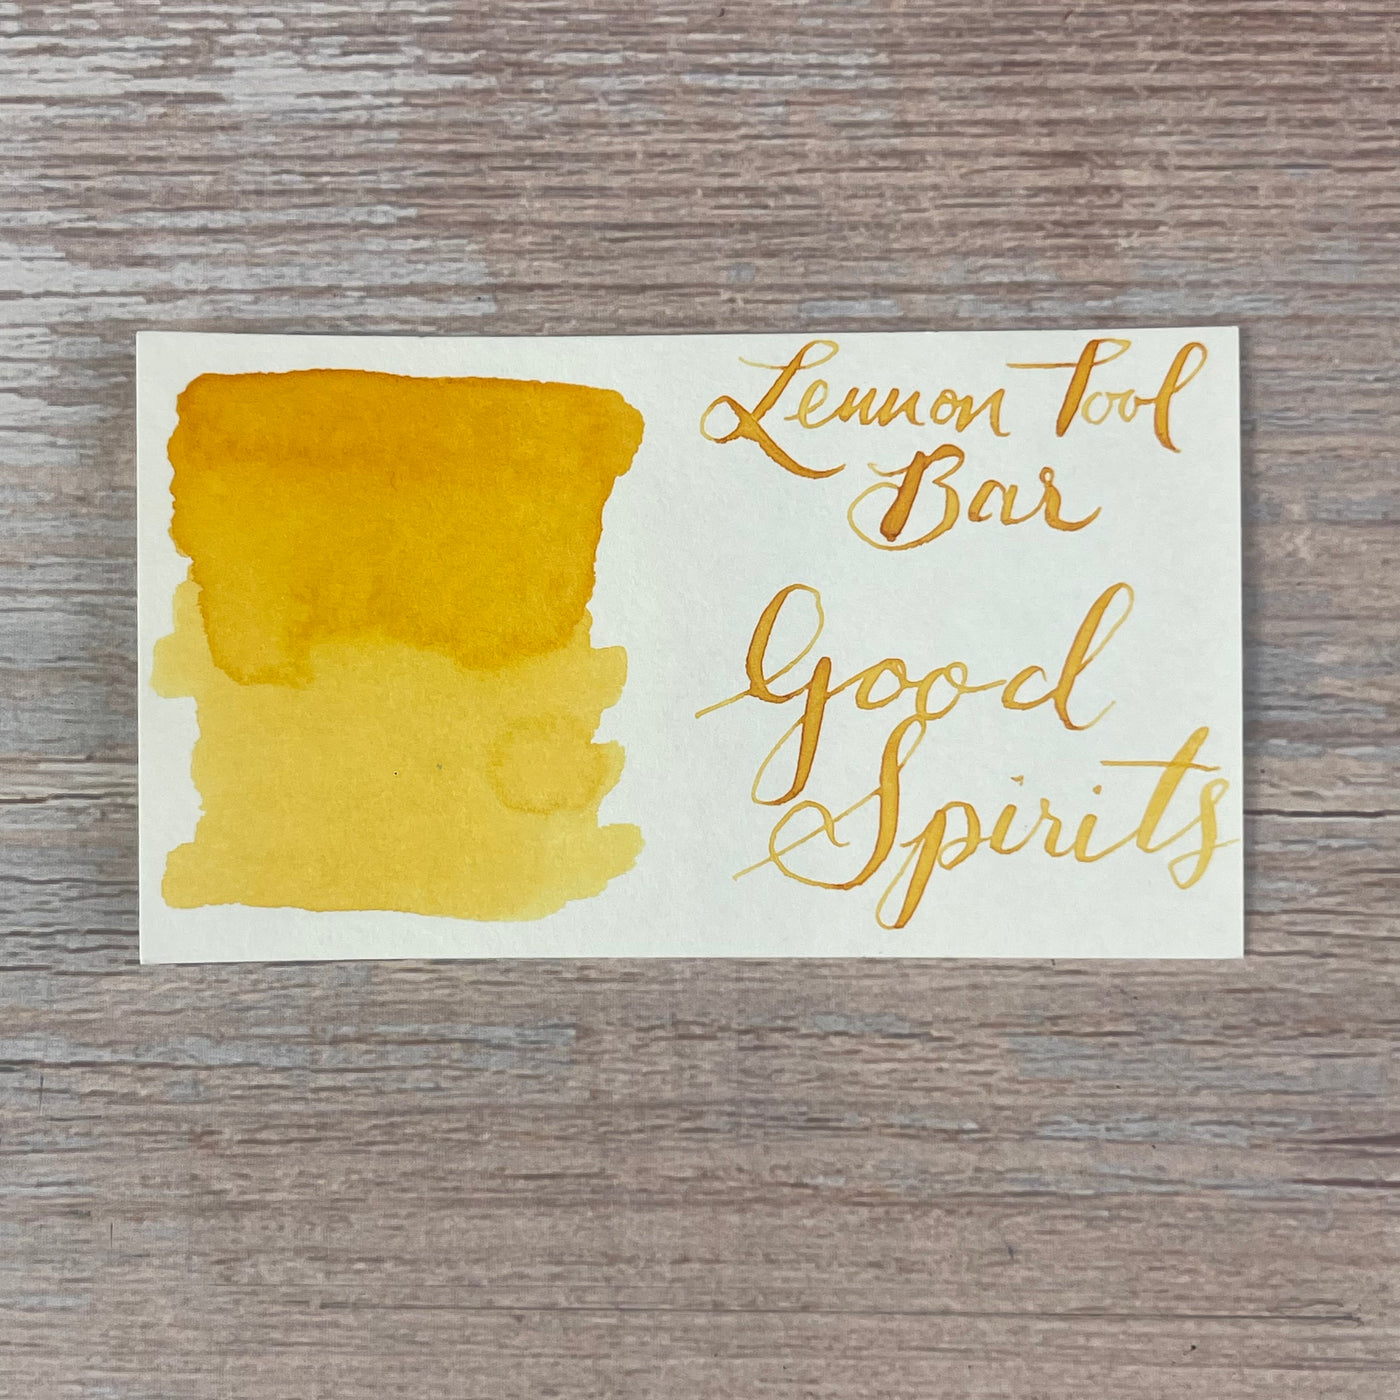 Lennon Tool Bar Good Spirits - 30ml Bottled Ink